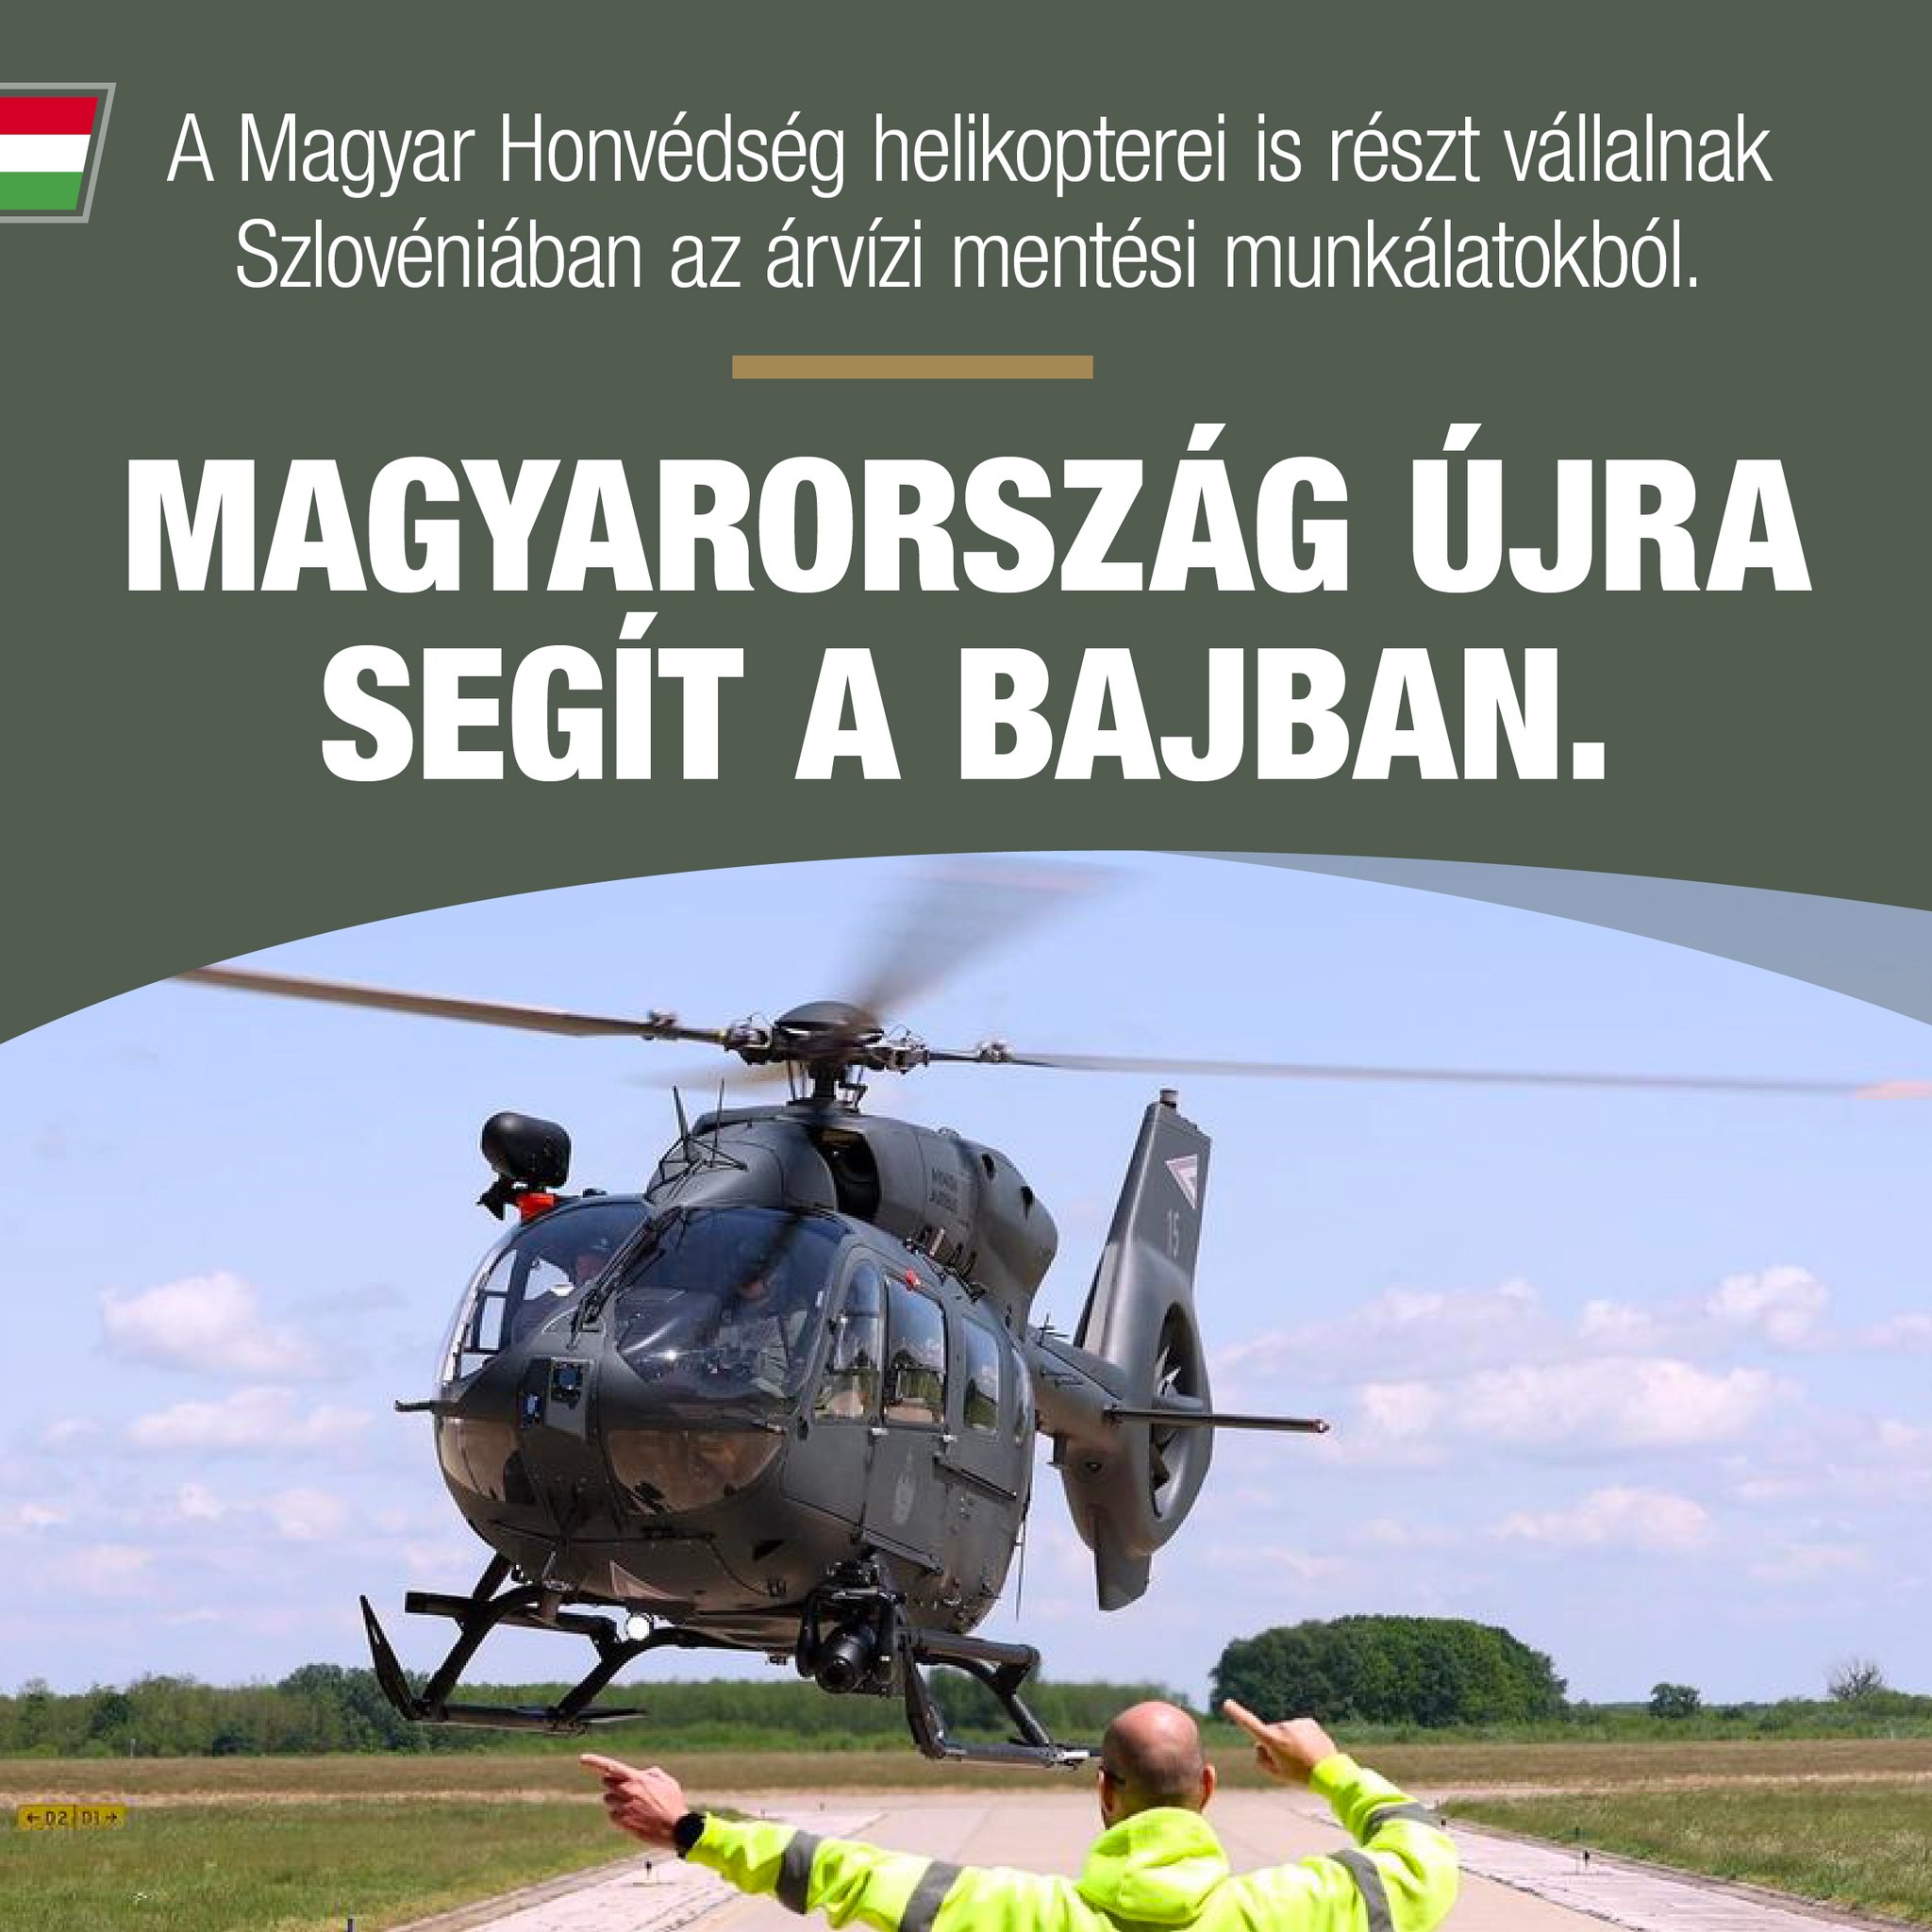 Az elmúlt napok viharai nem kímélték Szlovéniát, a magyar katonák az áradások sújtotta ország segítségére sietnek.